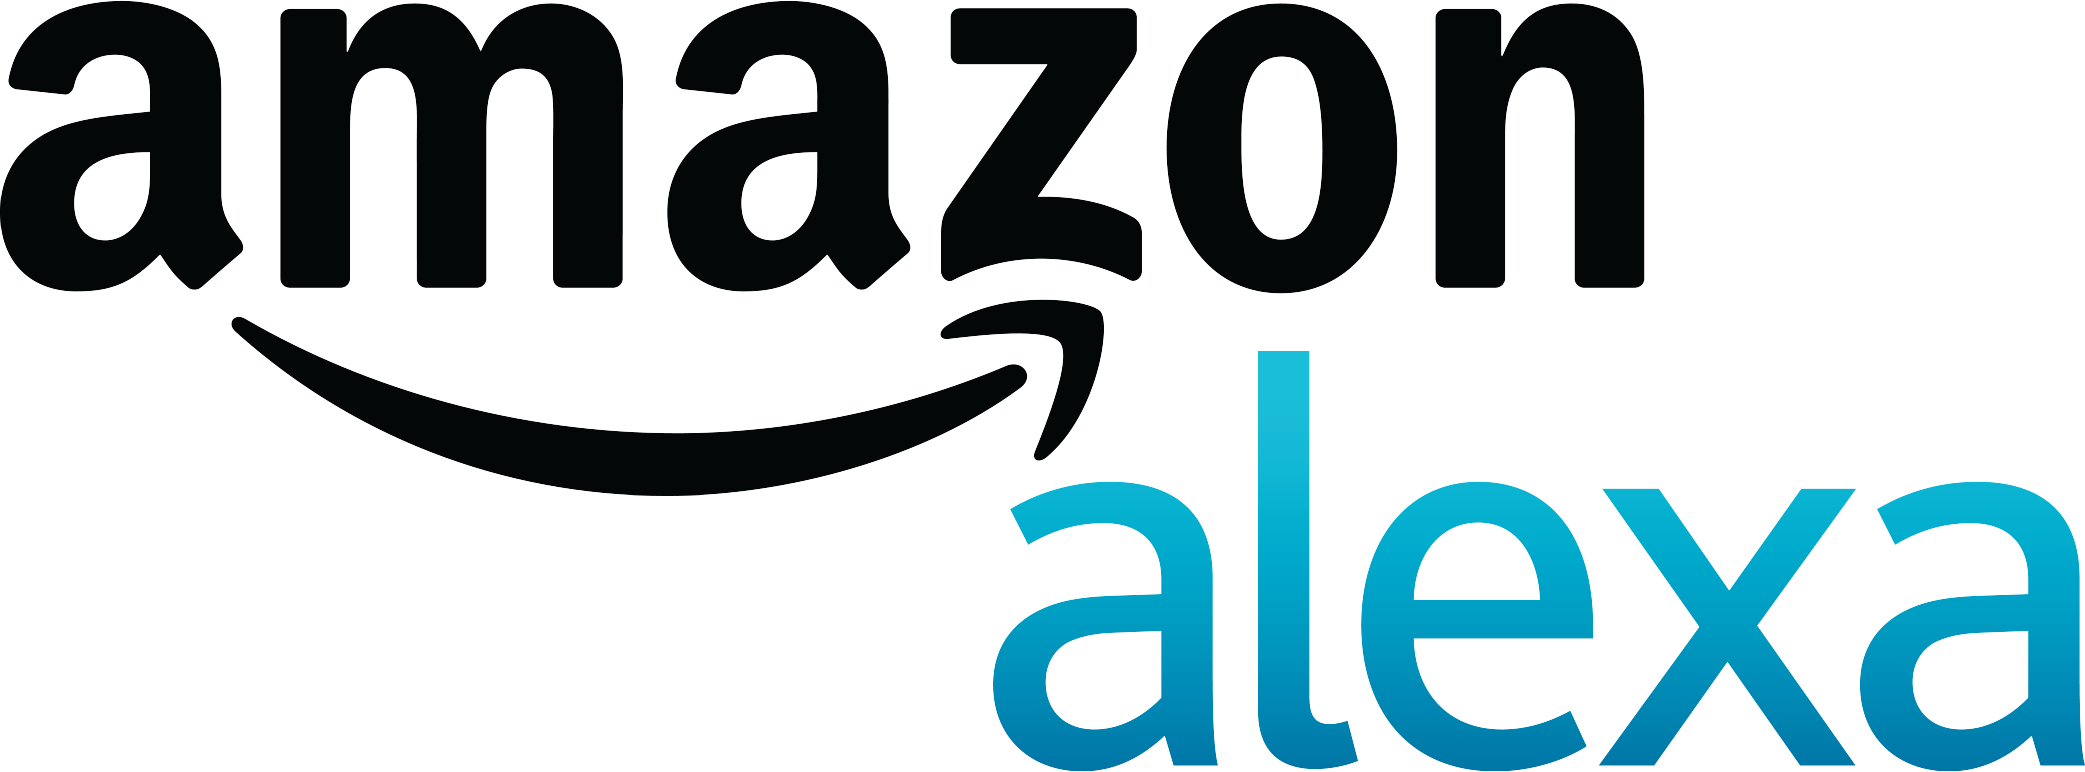 Алекса амазон. Amazon логотип. Alexa логотип. Amazon Alexa. Амазон Алекса логотипы.